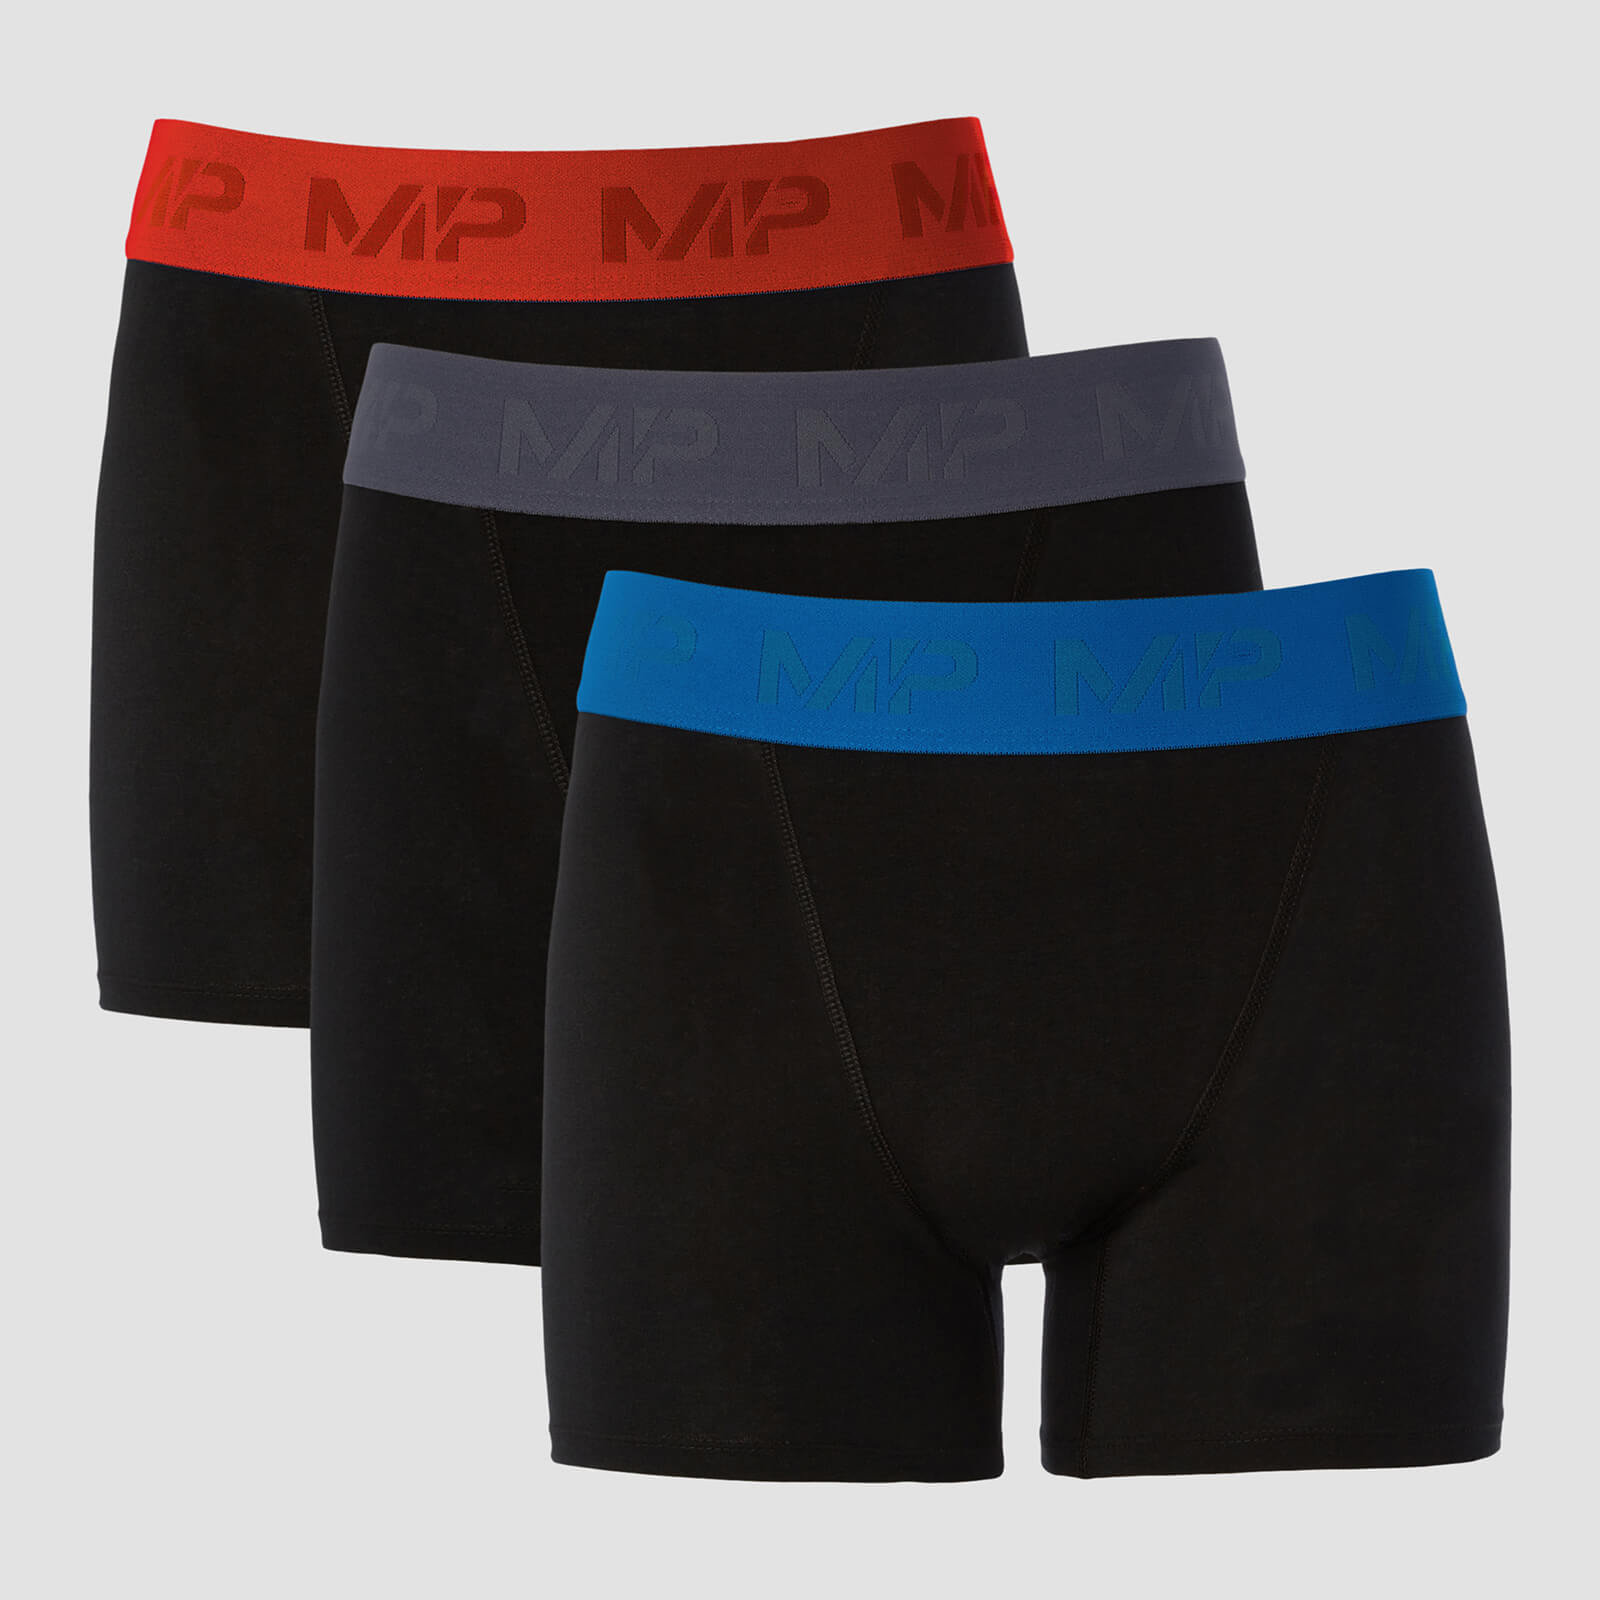 Купить MP Men's Coloured Waistband Boxers (3 Pack) - Black/Graphite/True Blue/Fire - XXL, Myprotein International